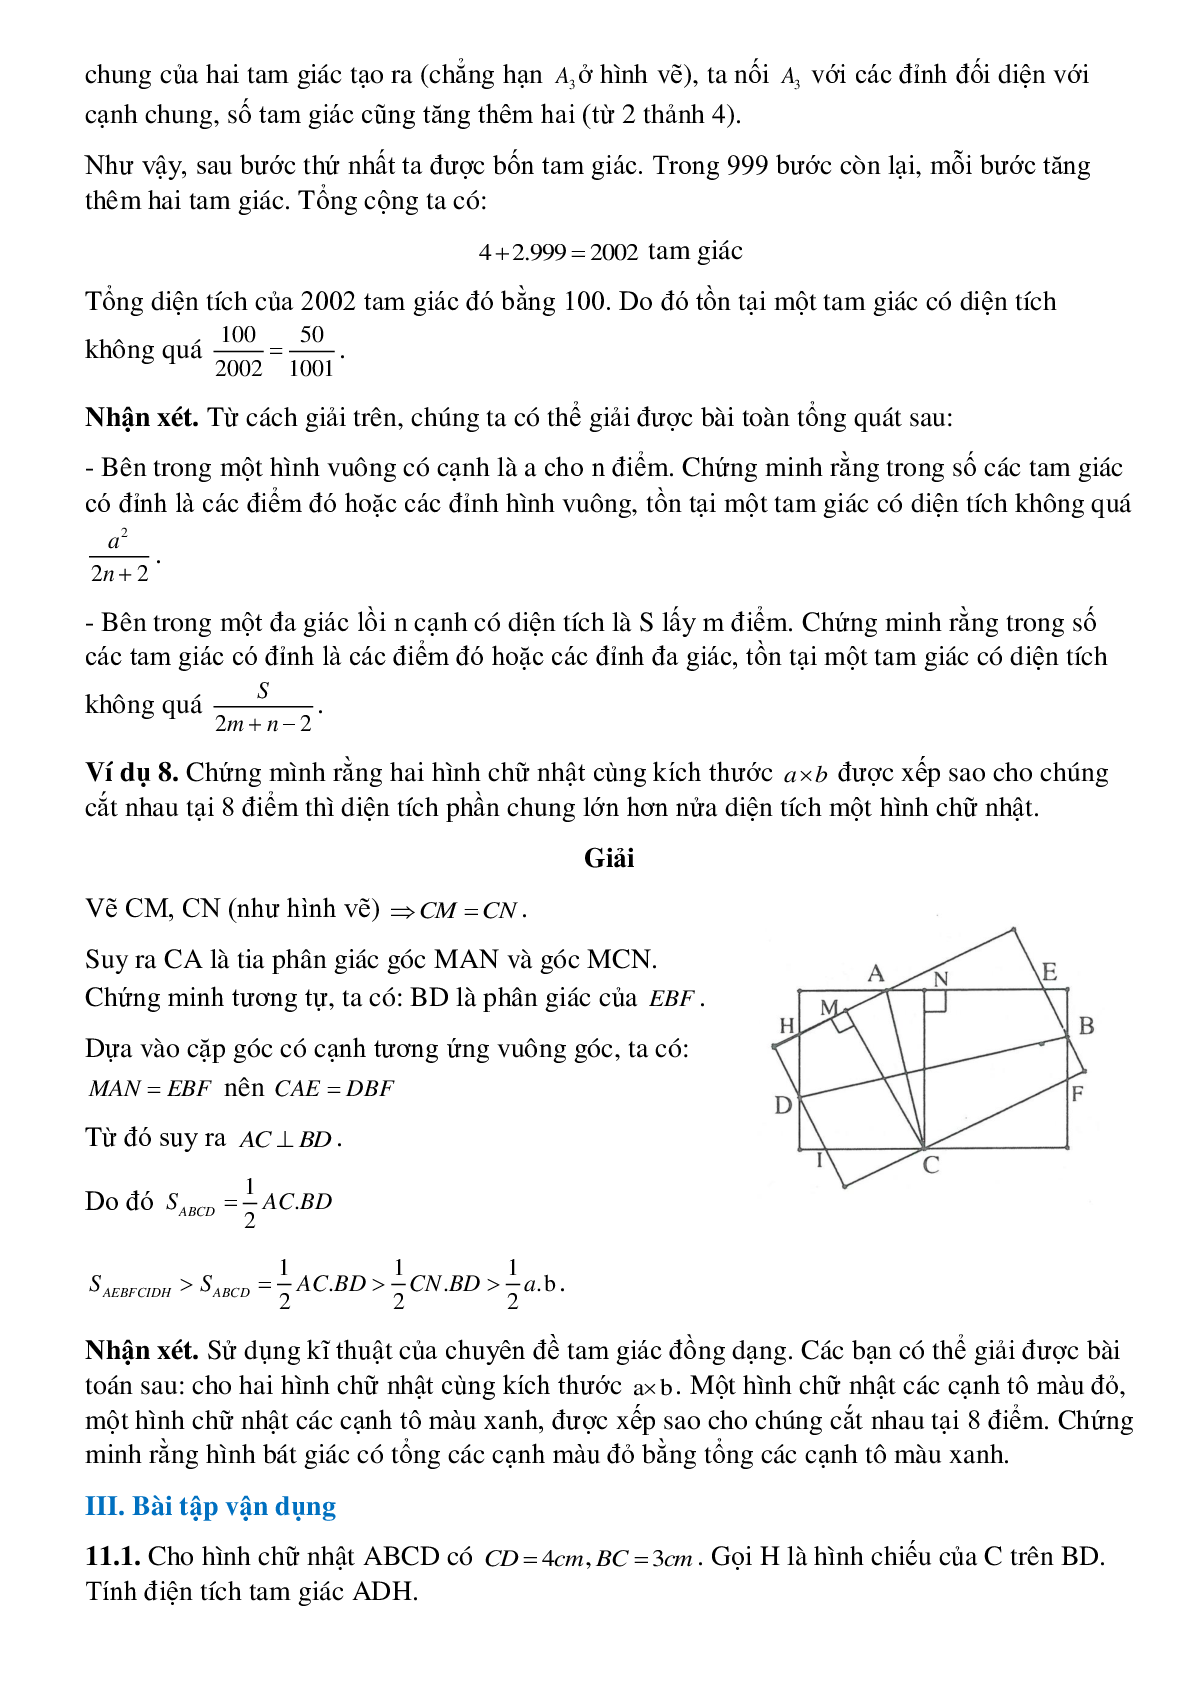 Diện tích đa giác (trang 7)